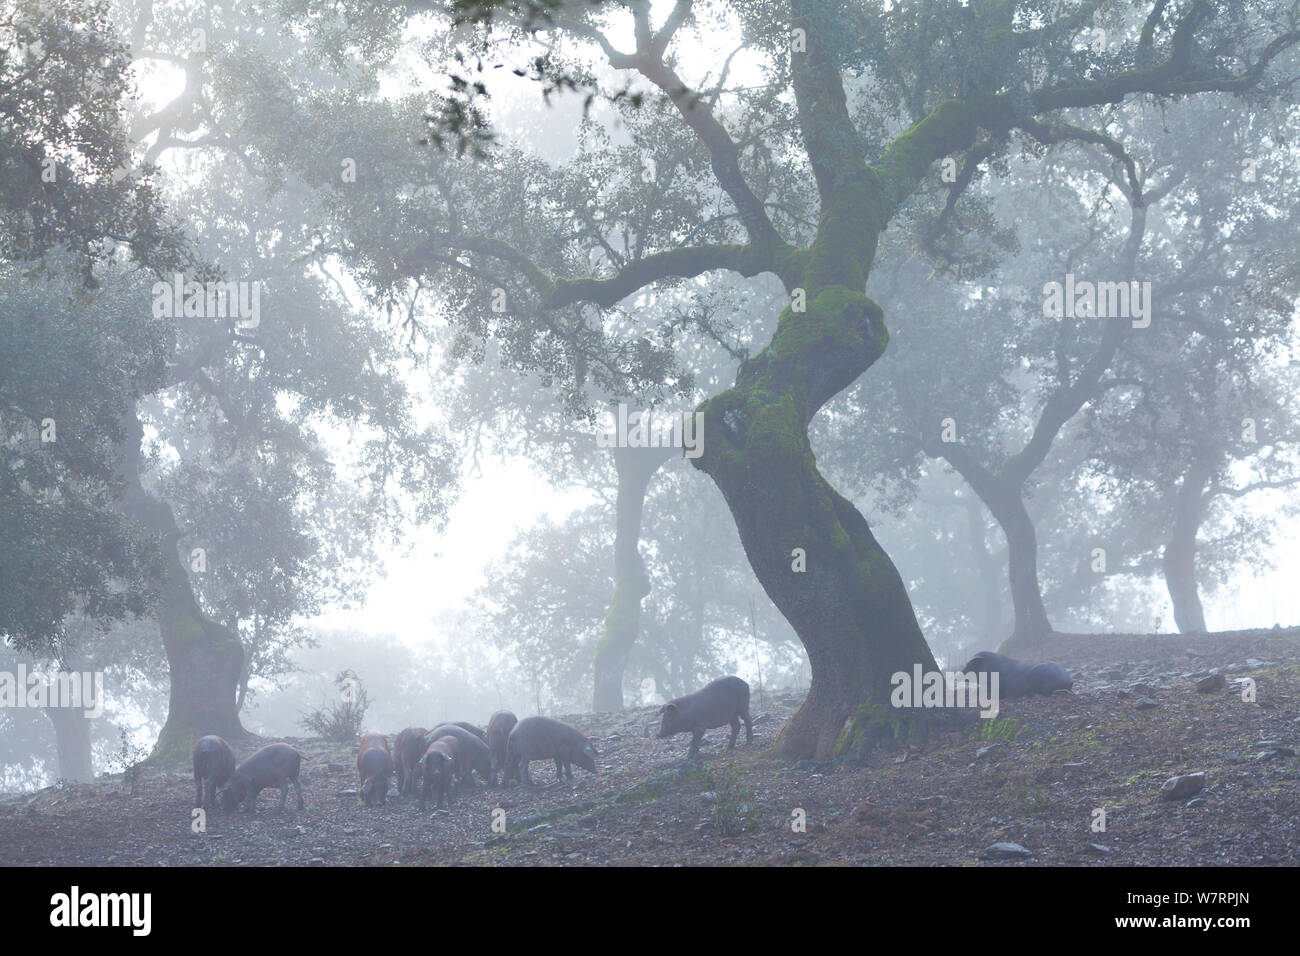 Iberica suini nero rovistando nel bosco di querce nella nebbia, Sierra de Aracena parco naturale, Huelva, Andalusia, l'Europa. Razza utilizzato per produrre il prosciutto iberico / Jamon Iberico Foto Stock